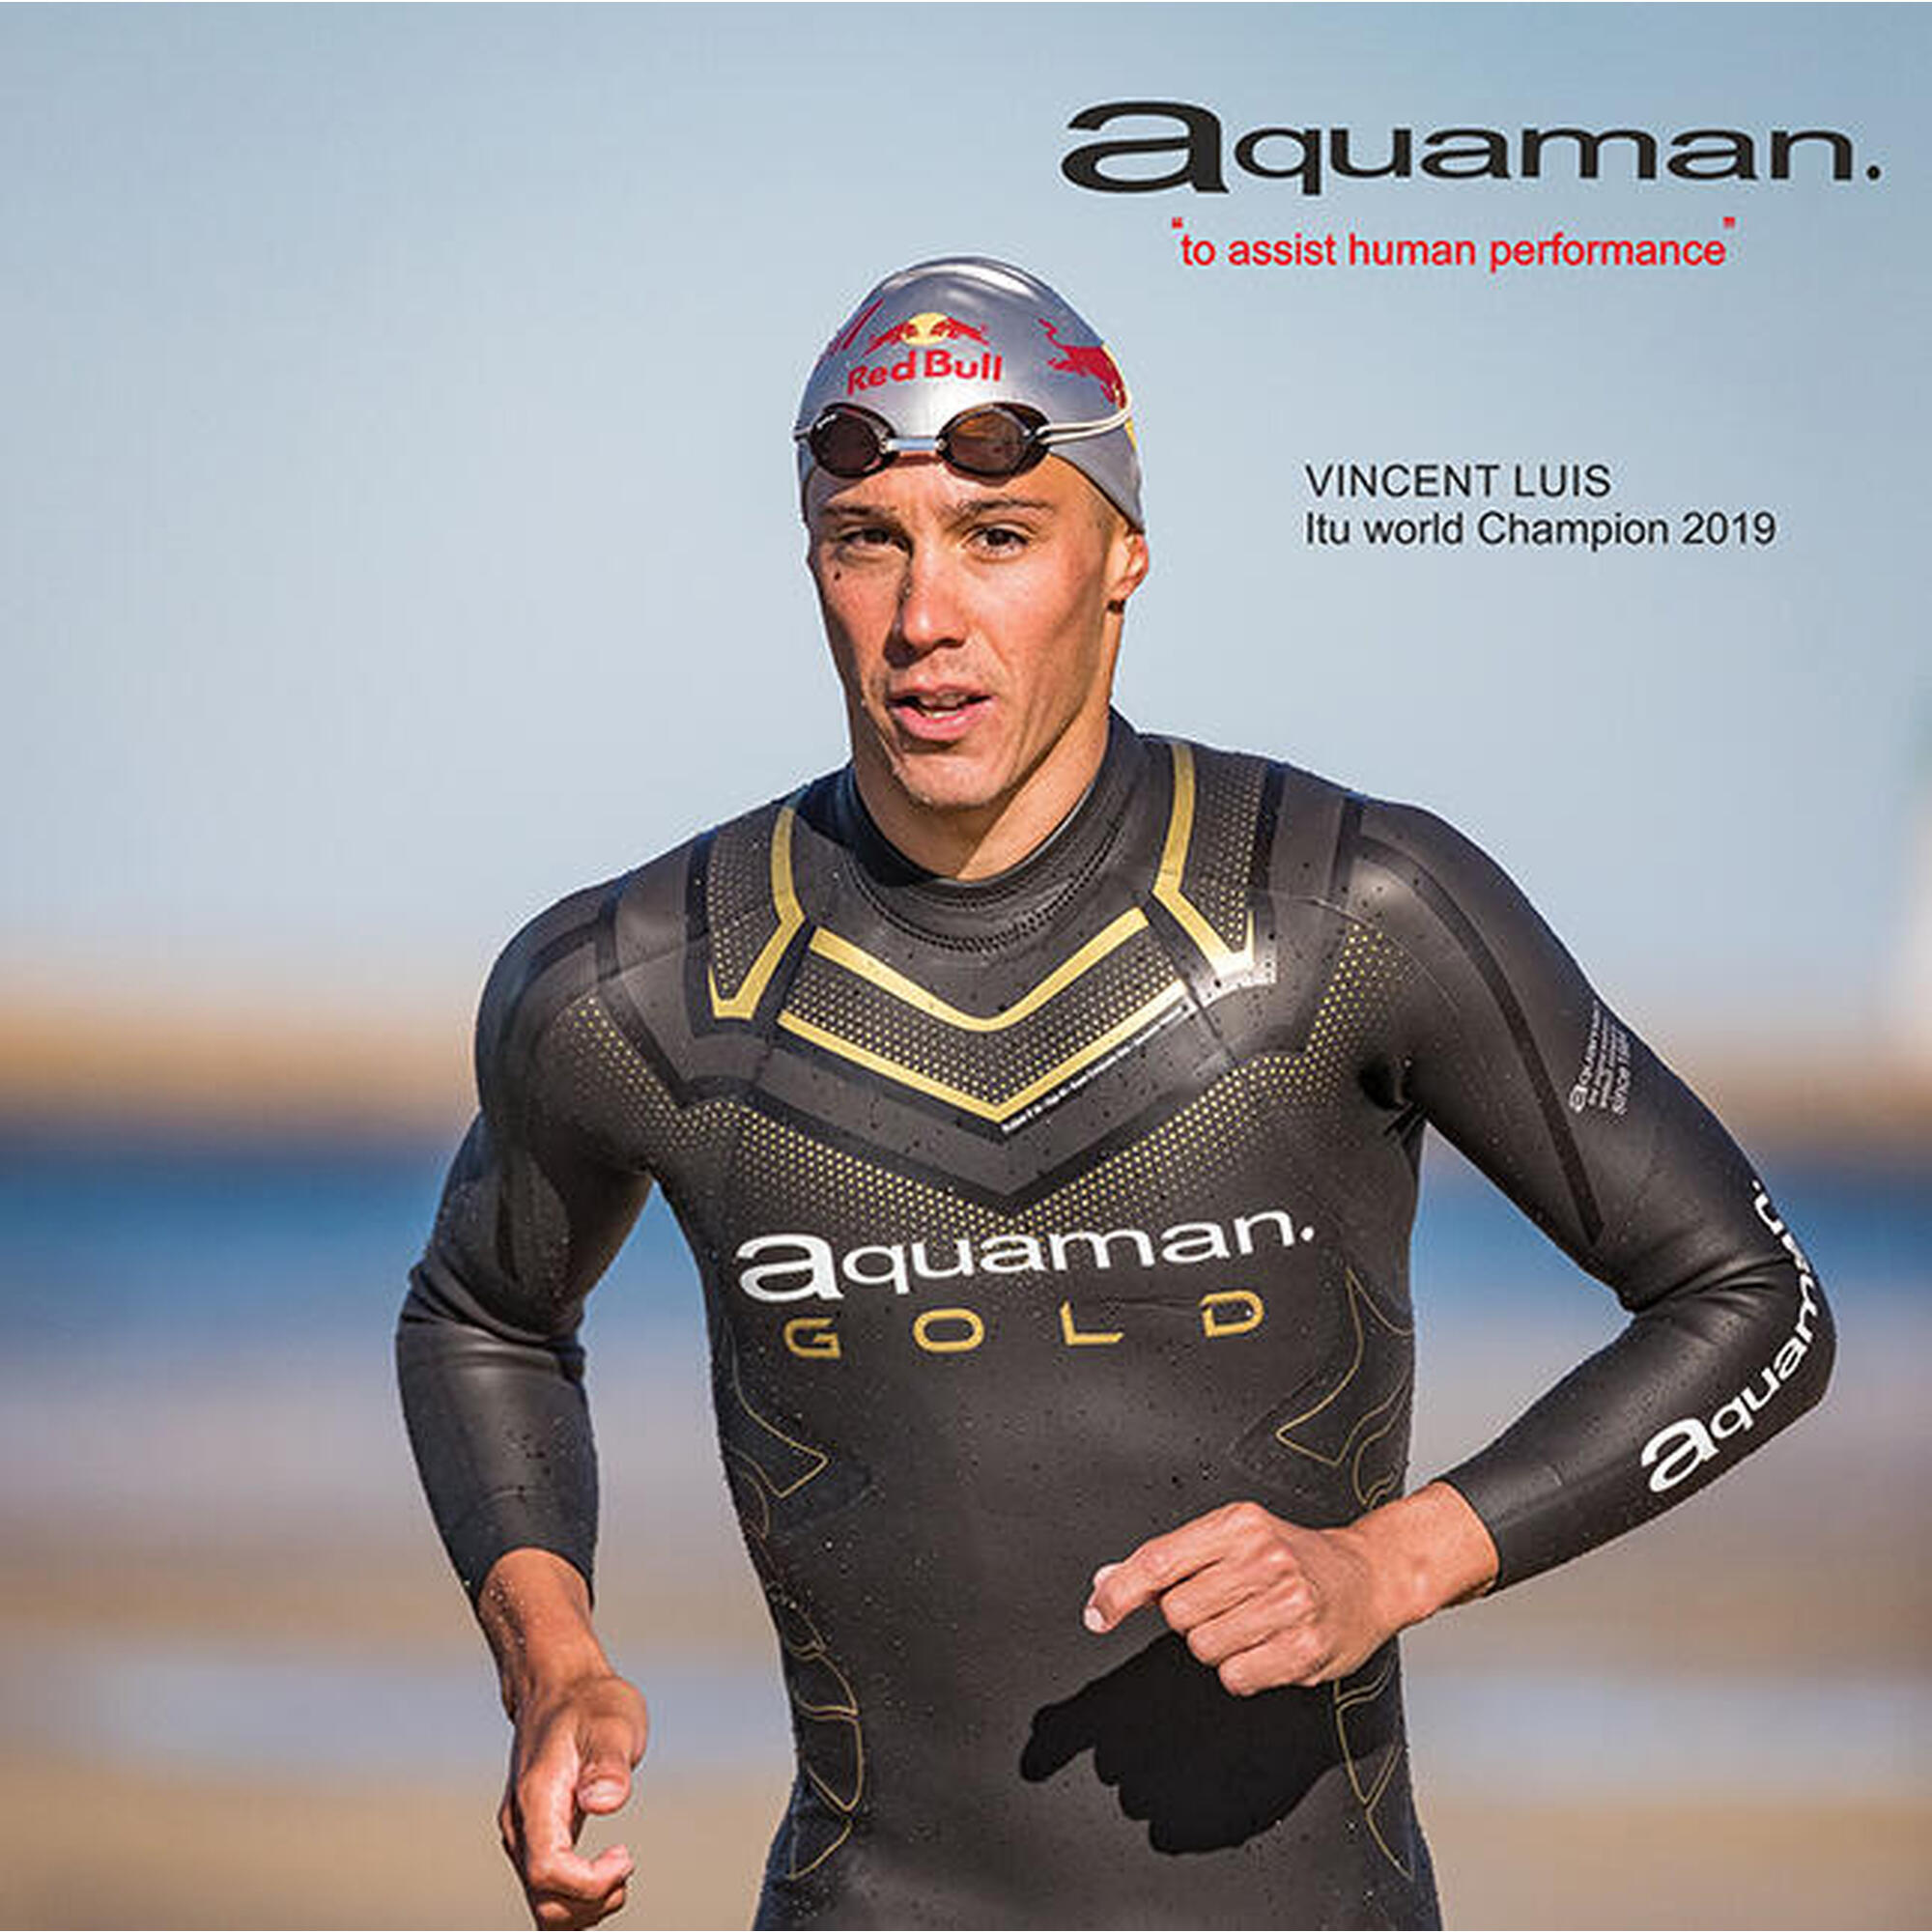 Combinaison de Triathlon Néoprène Homme Aquaman Cell Gold 2024